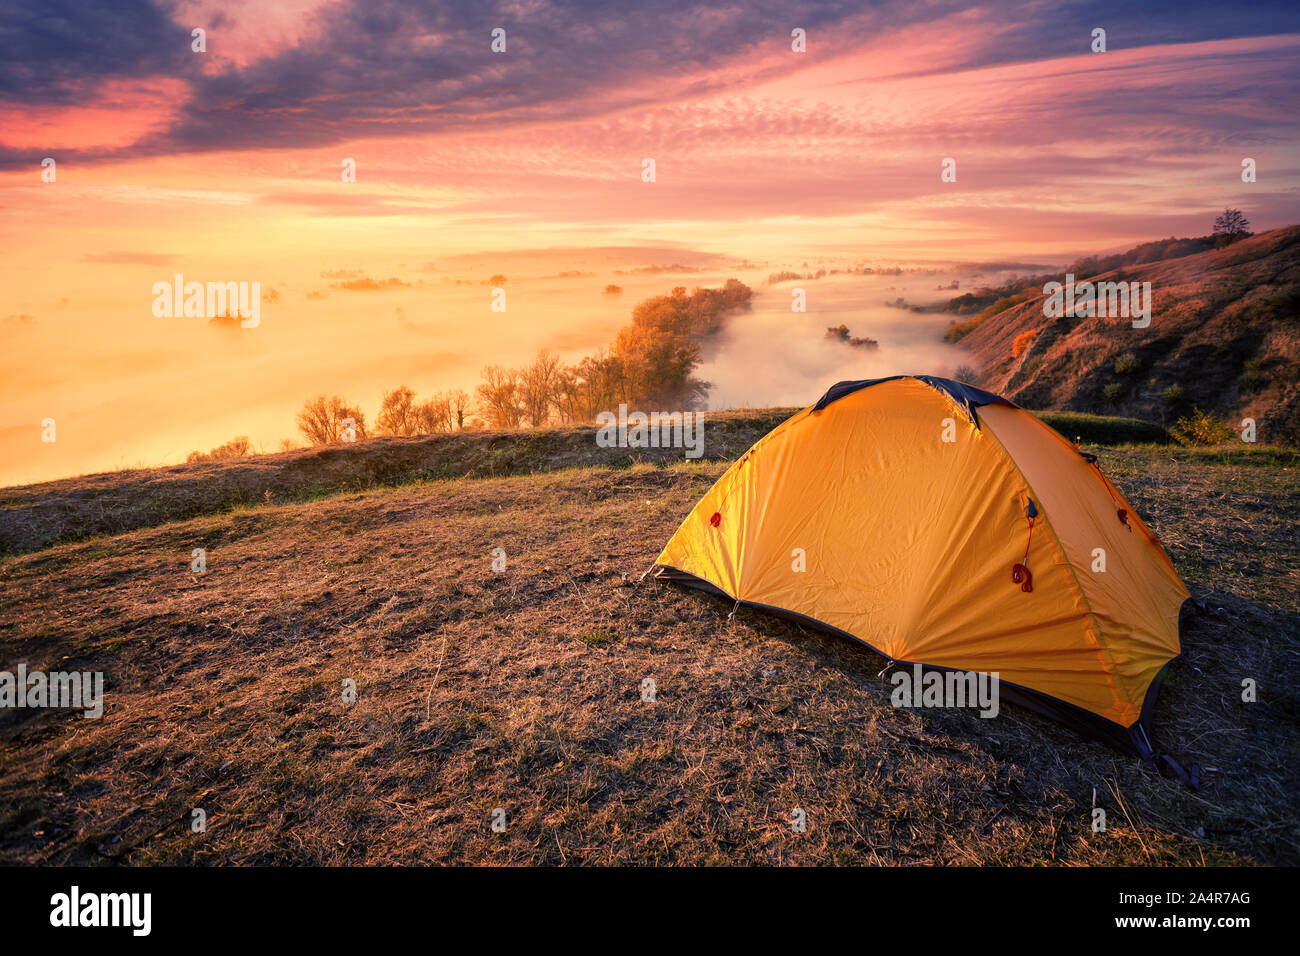 Tourisme Orange tente sur une colline au-dessus d'une rivière de brouillard. Ciel coucher de soleil spectaculaire. Billet et privacy concept Banque D'Images